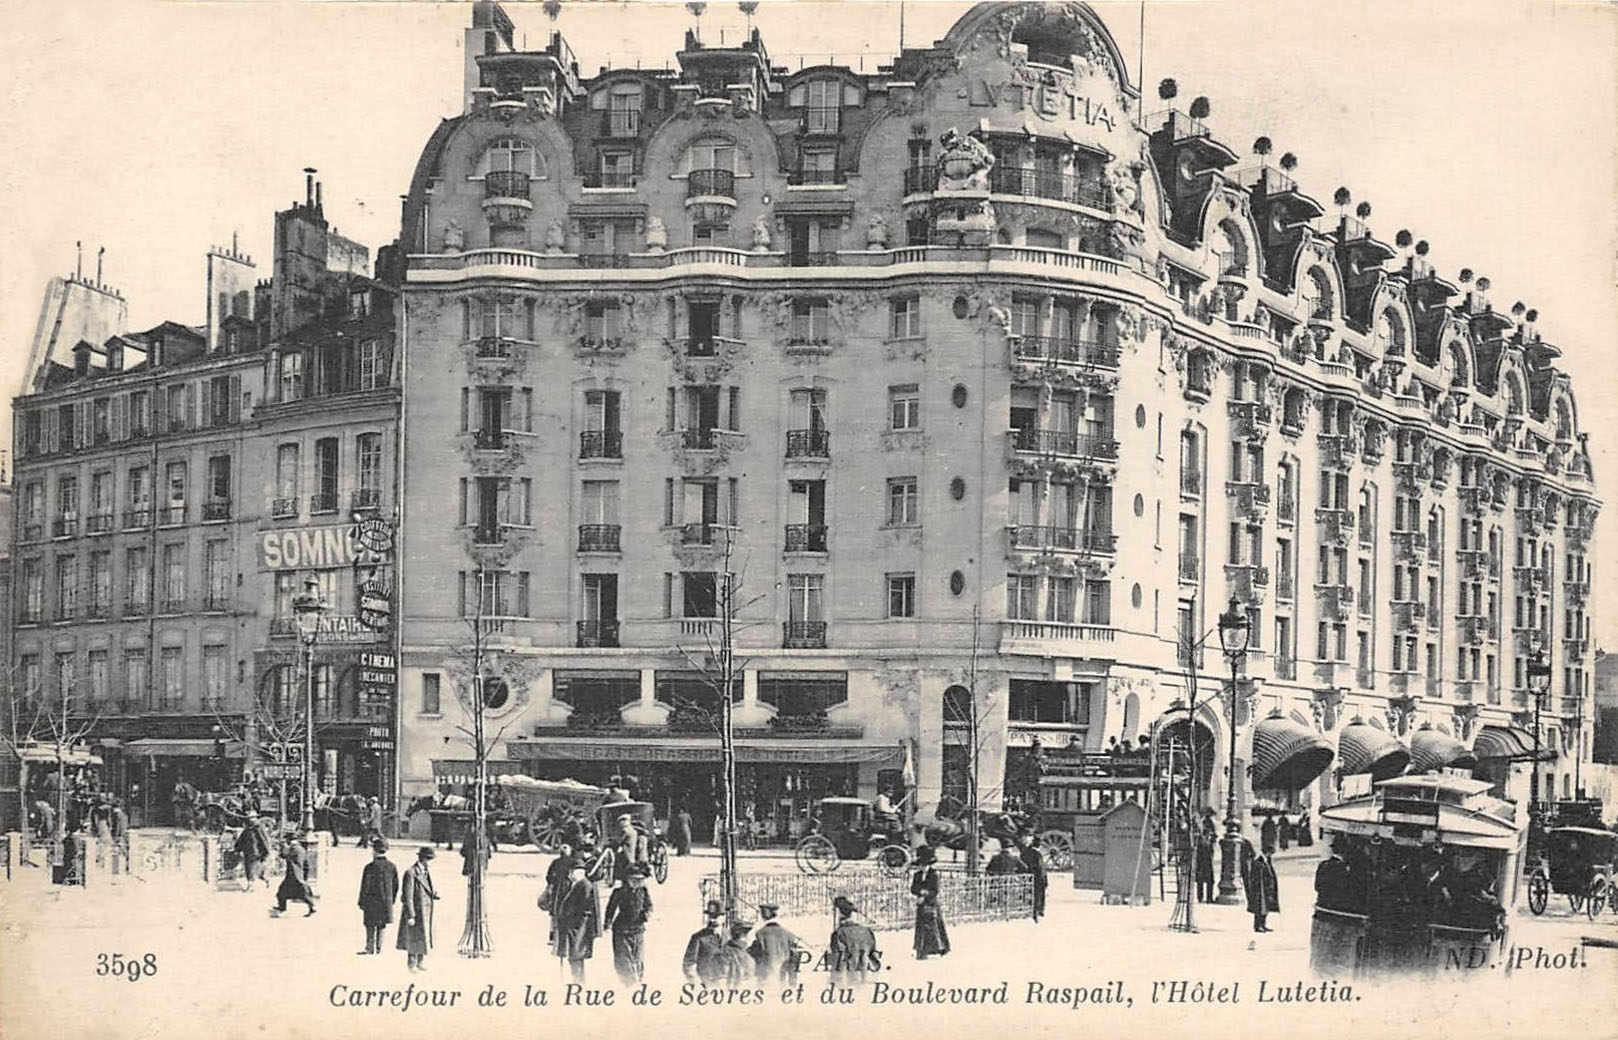 Carrefour de la Rue de Sèvres et du Boulevard Raspail, l'Hôtel Lutetia